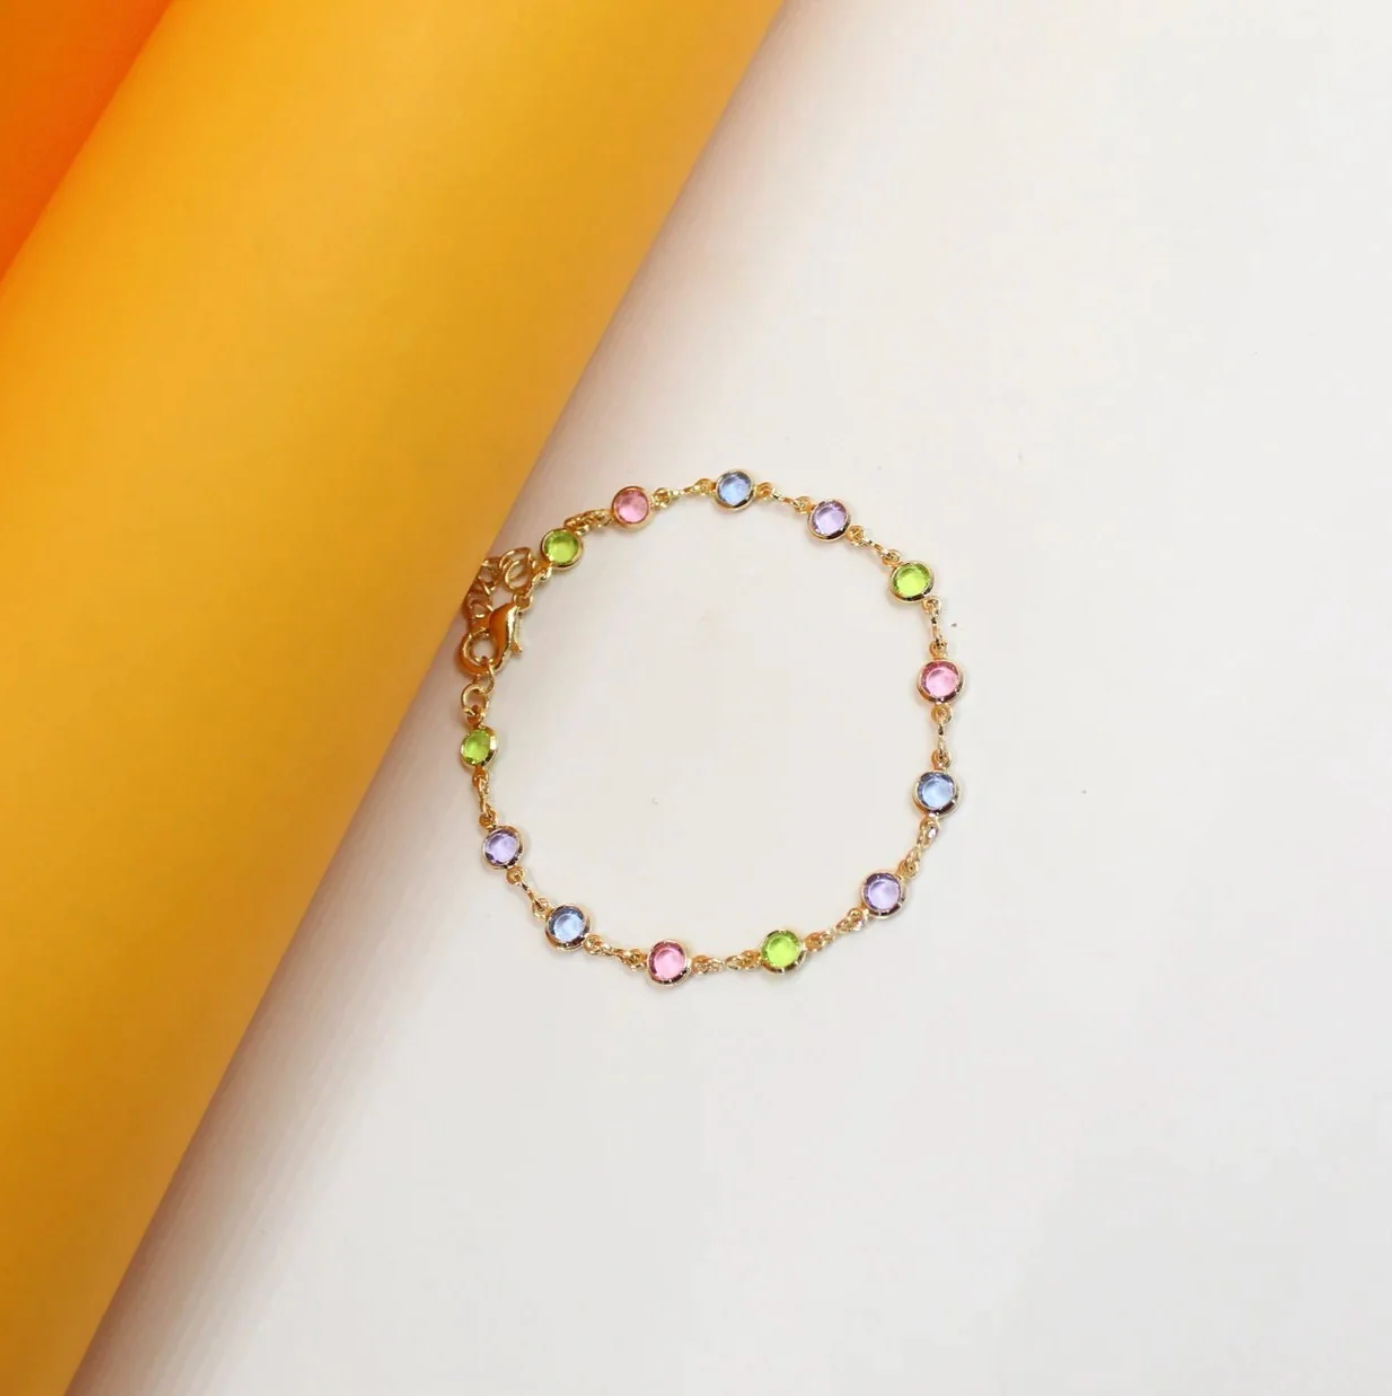 Bejeweled Bracelet - Gold Filled